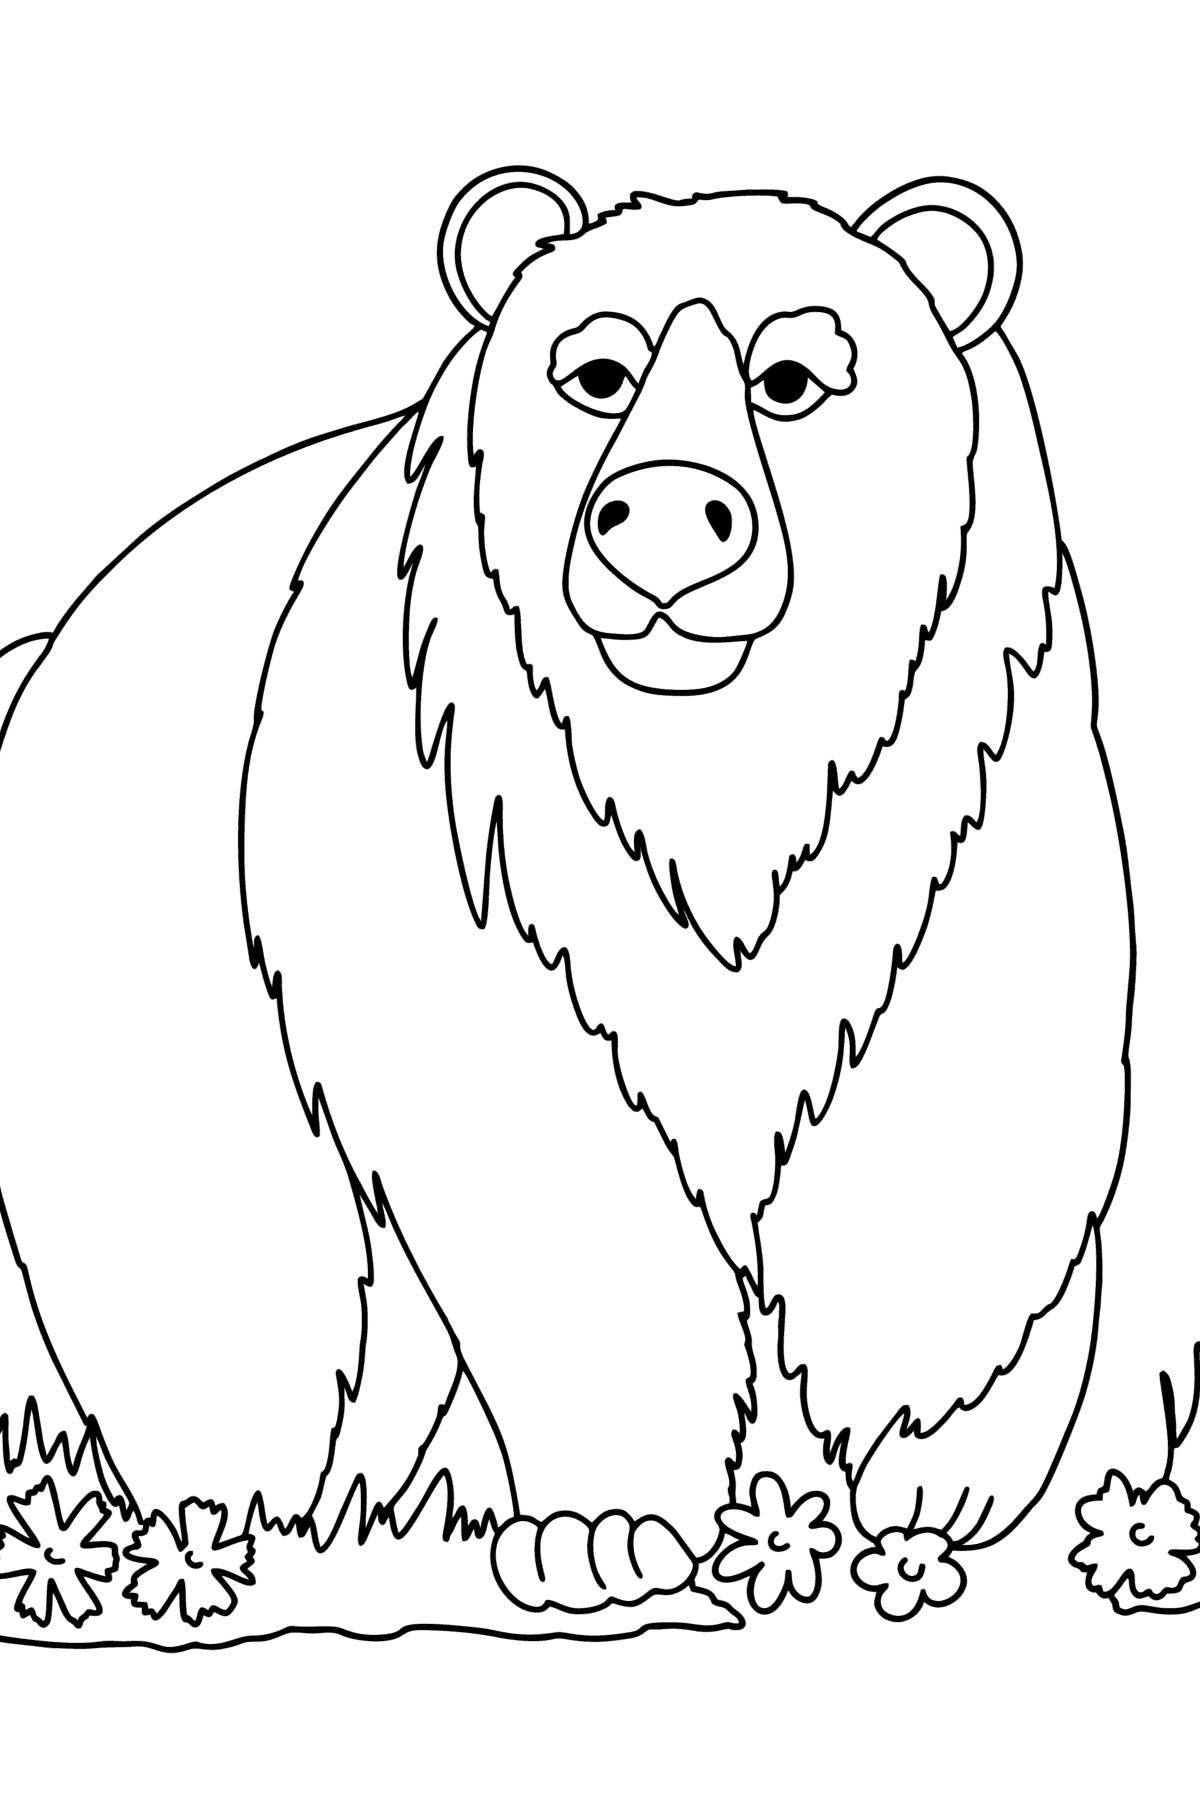 Причудливая раскраска бурого медведя для детей